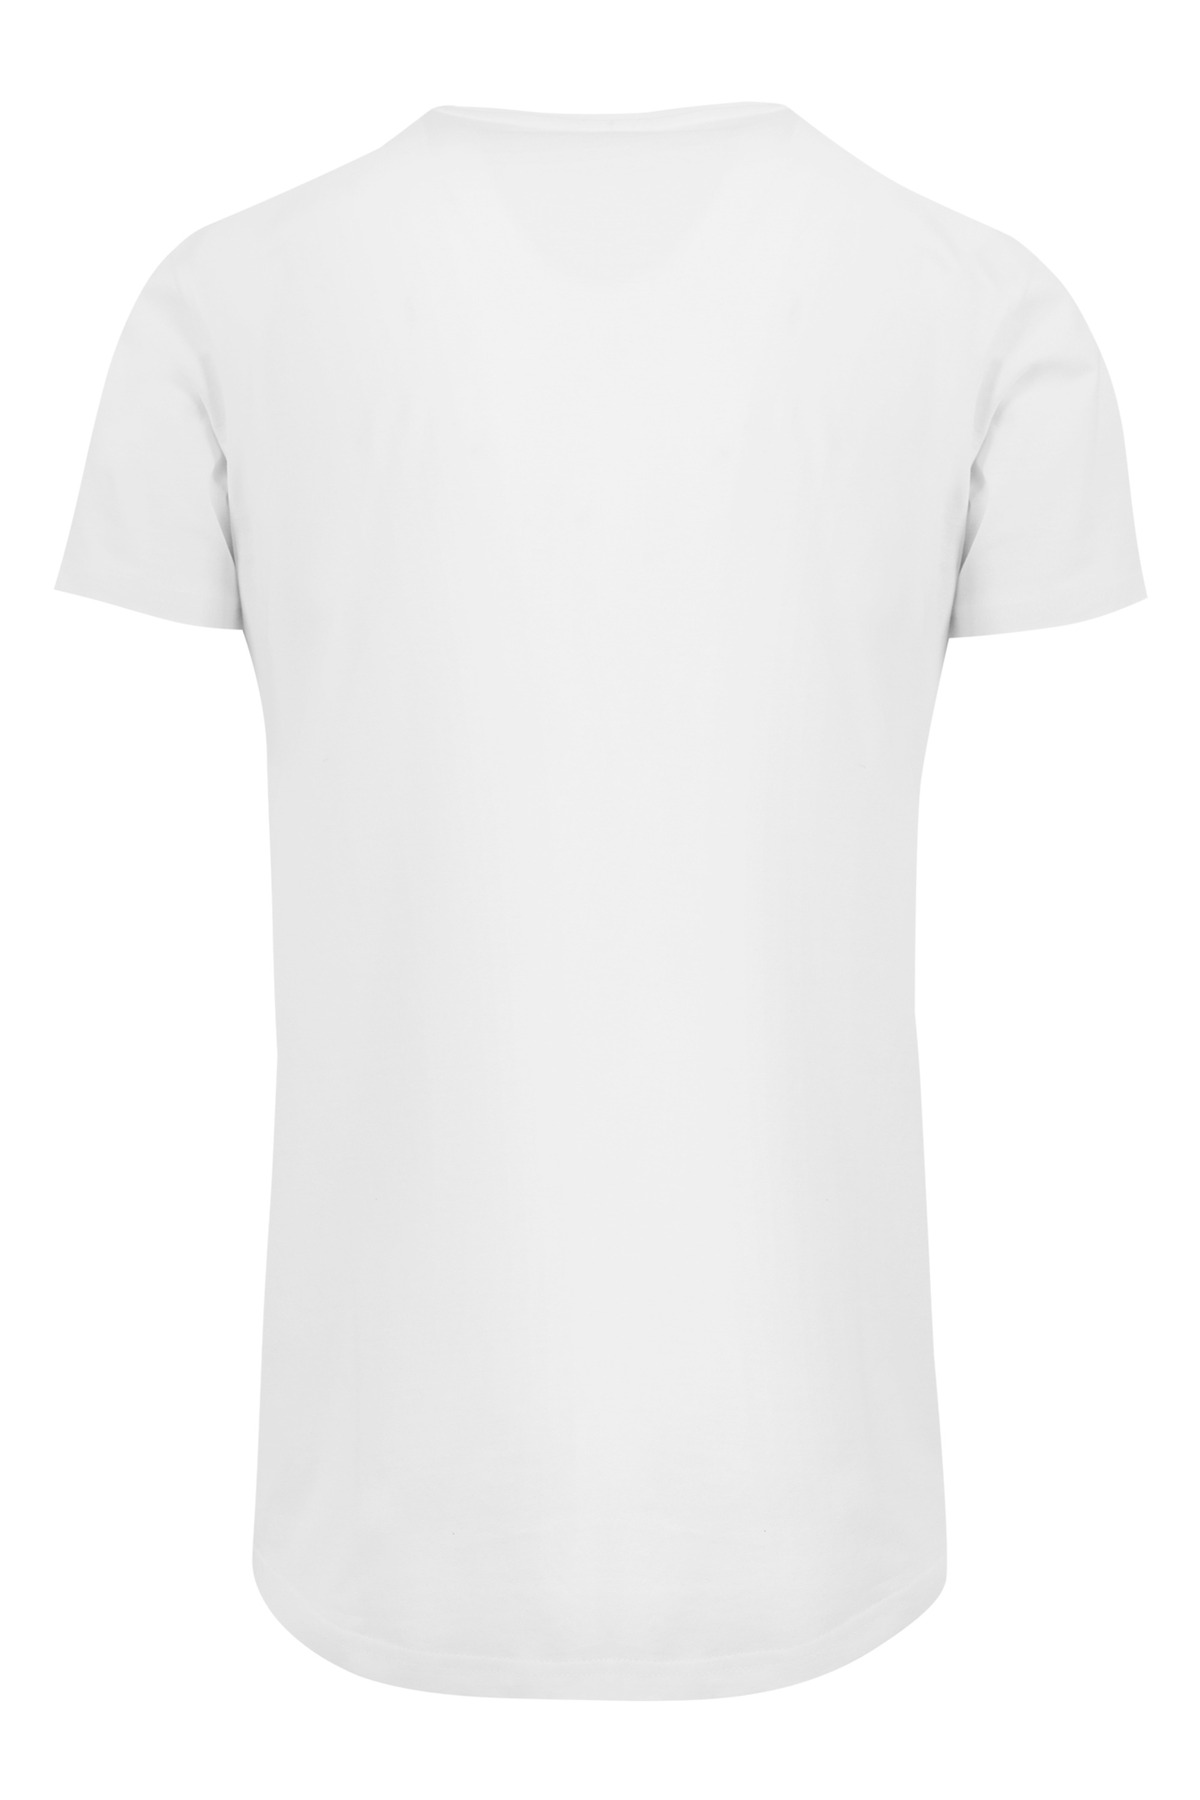 Trendyol T-Shirt Weiß F4NT4STIC - Fit - Regular -